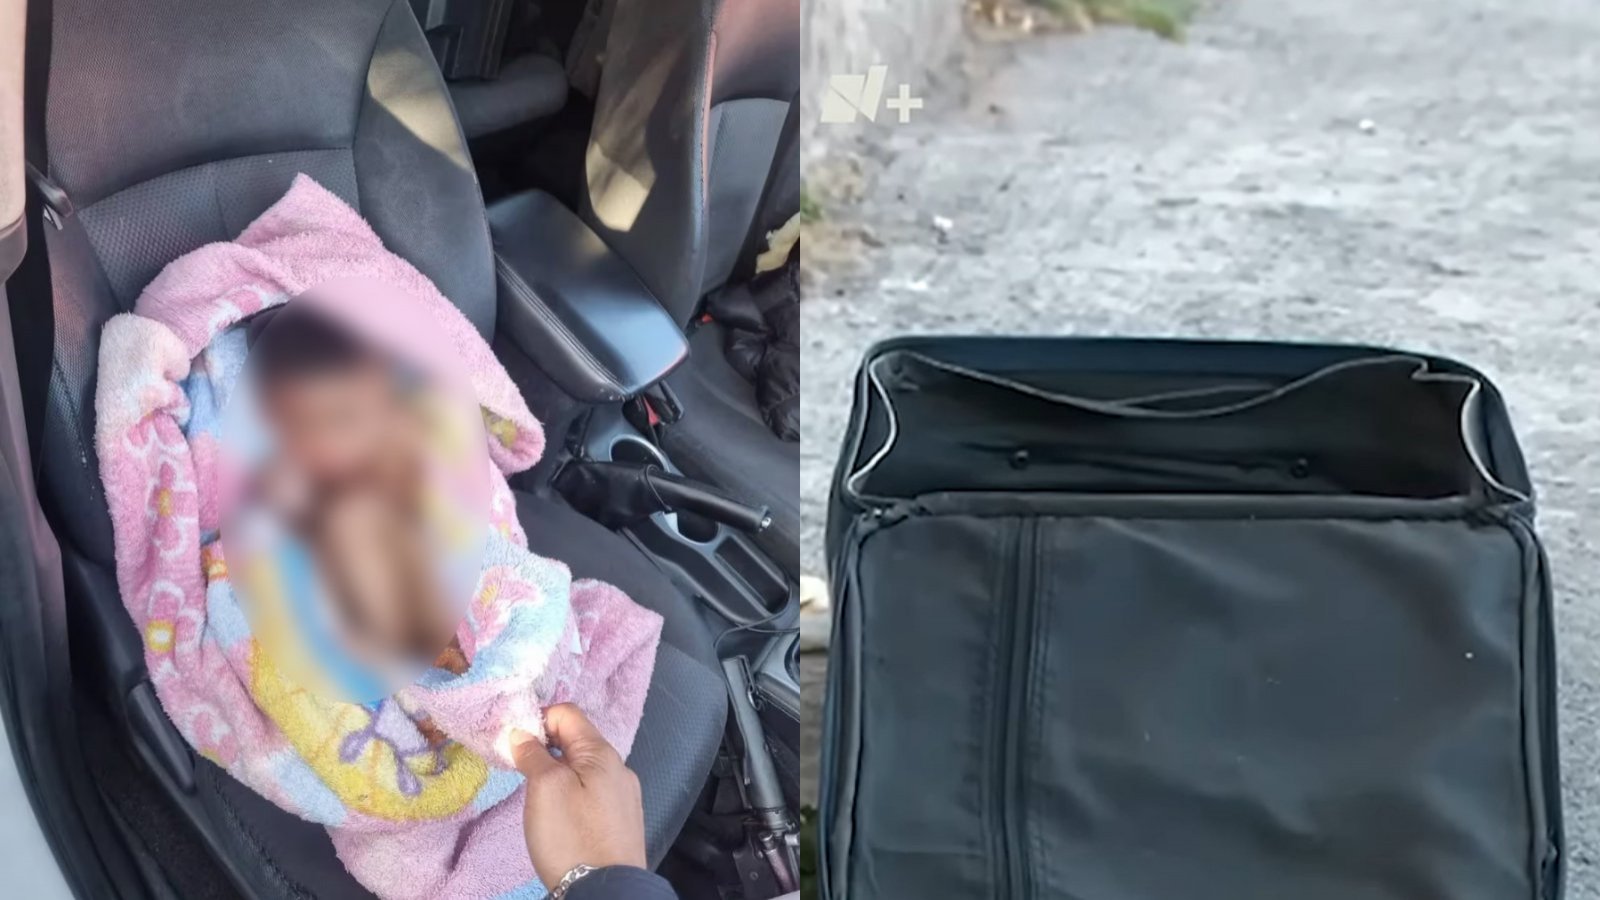 Abandonado y agredido: Encuentran a niño al interior de maleta